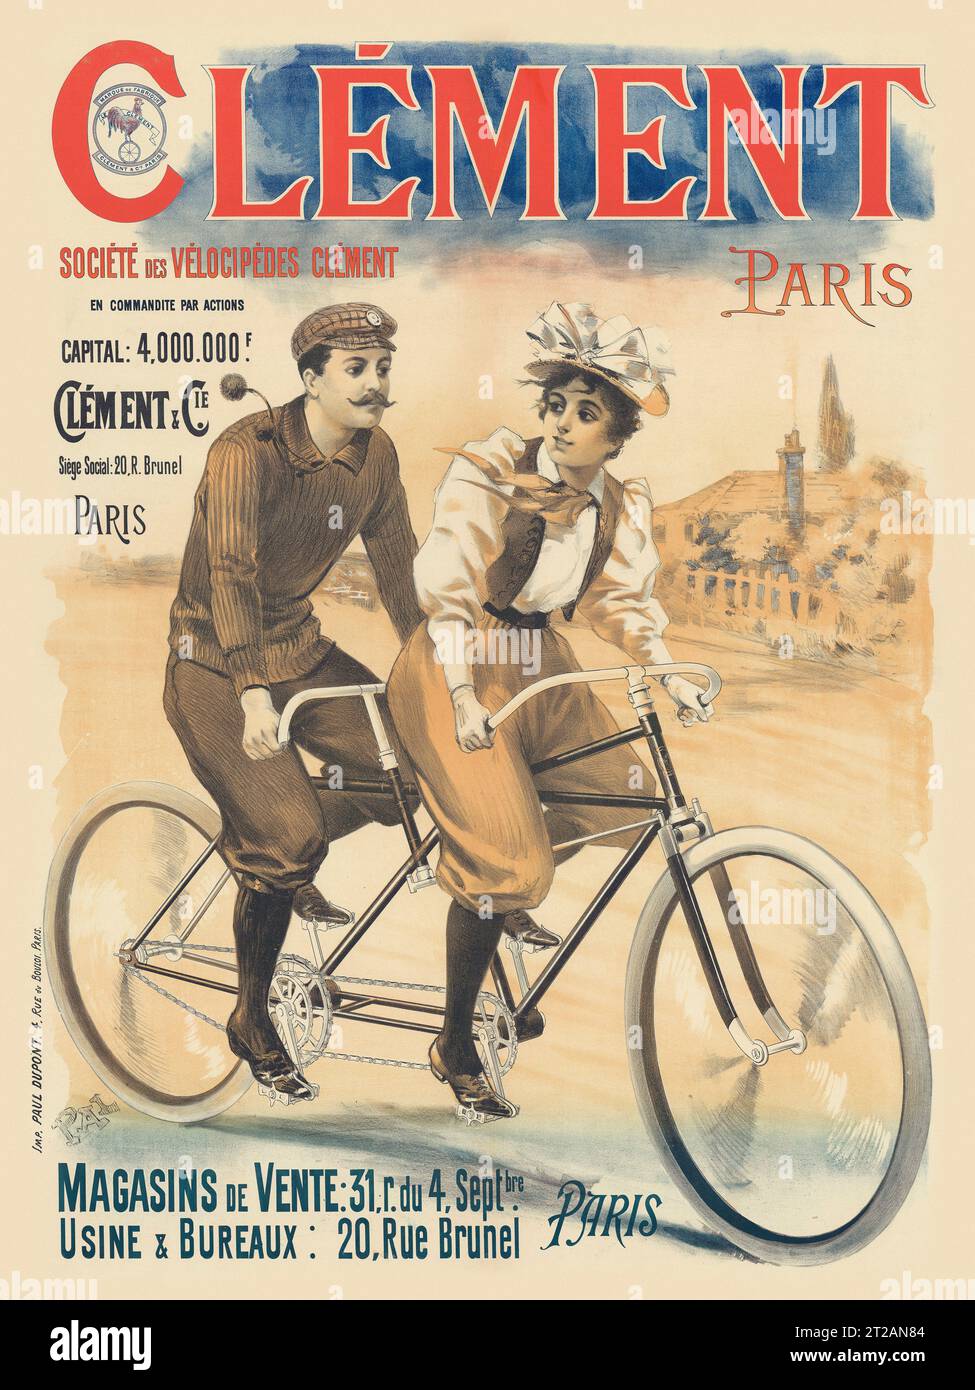 Clément, Paris. Société des vélocipèdes Clément by Jean de Paléologue (1855–1942). Poster published in 1895 in France. Stock Photo